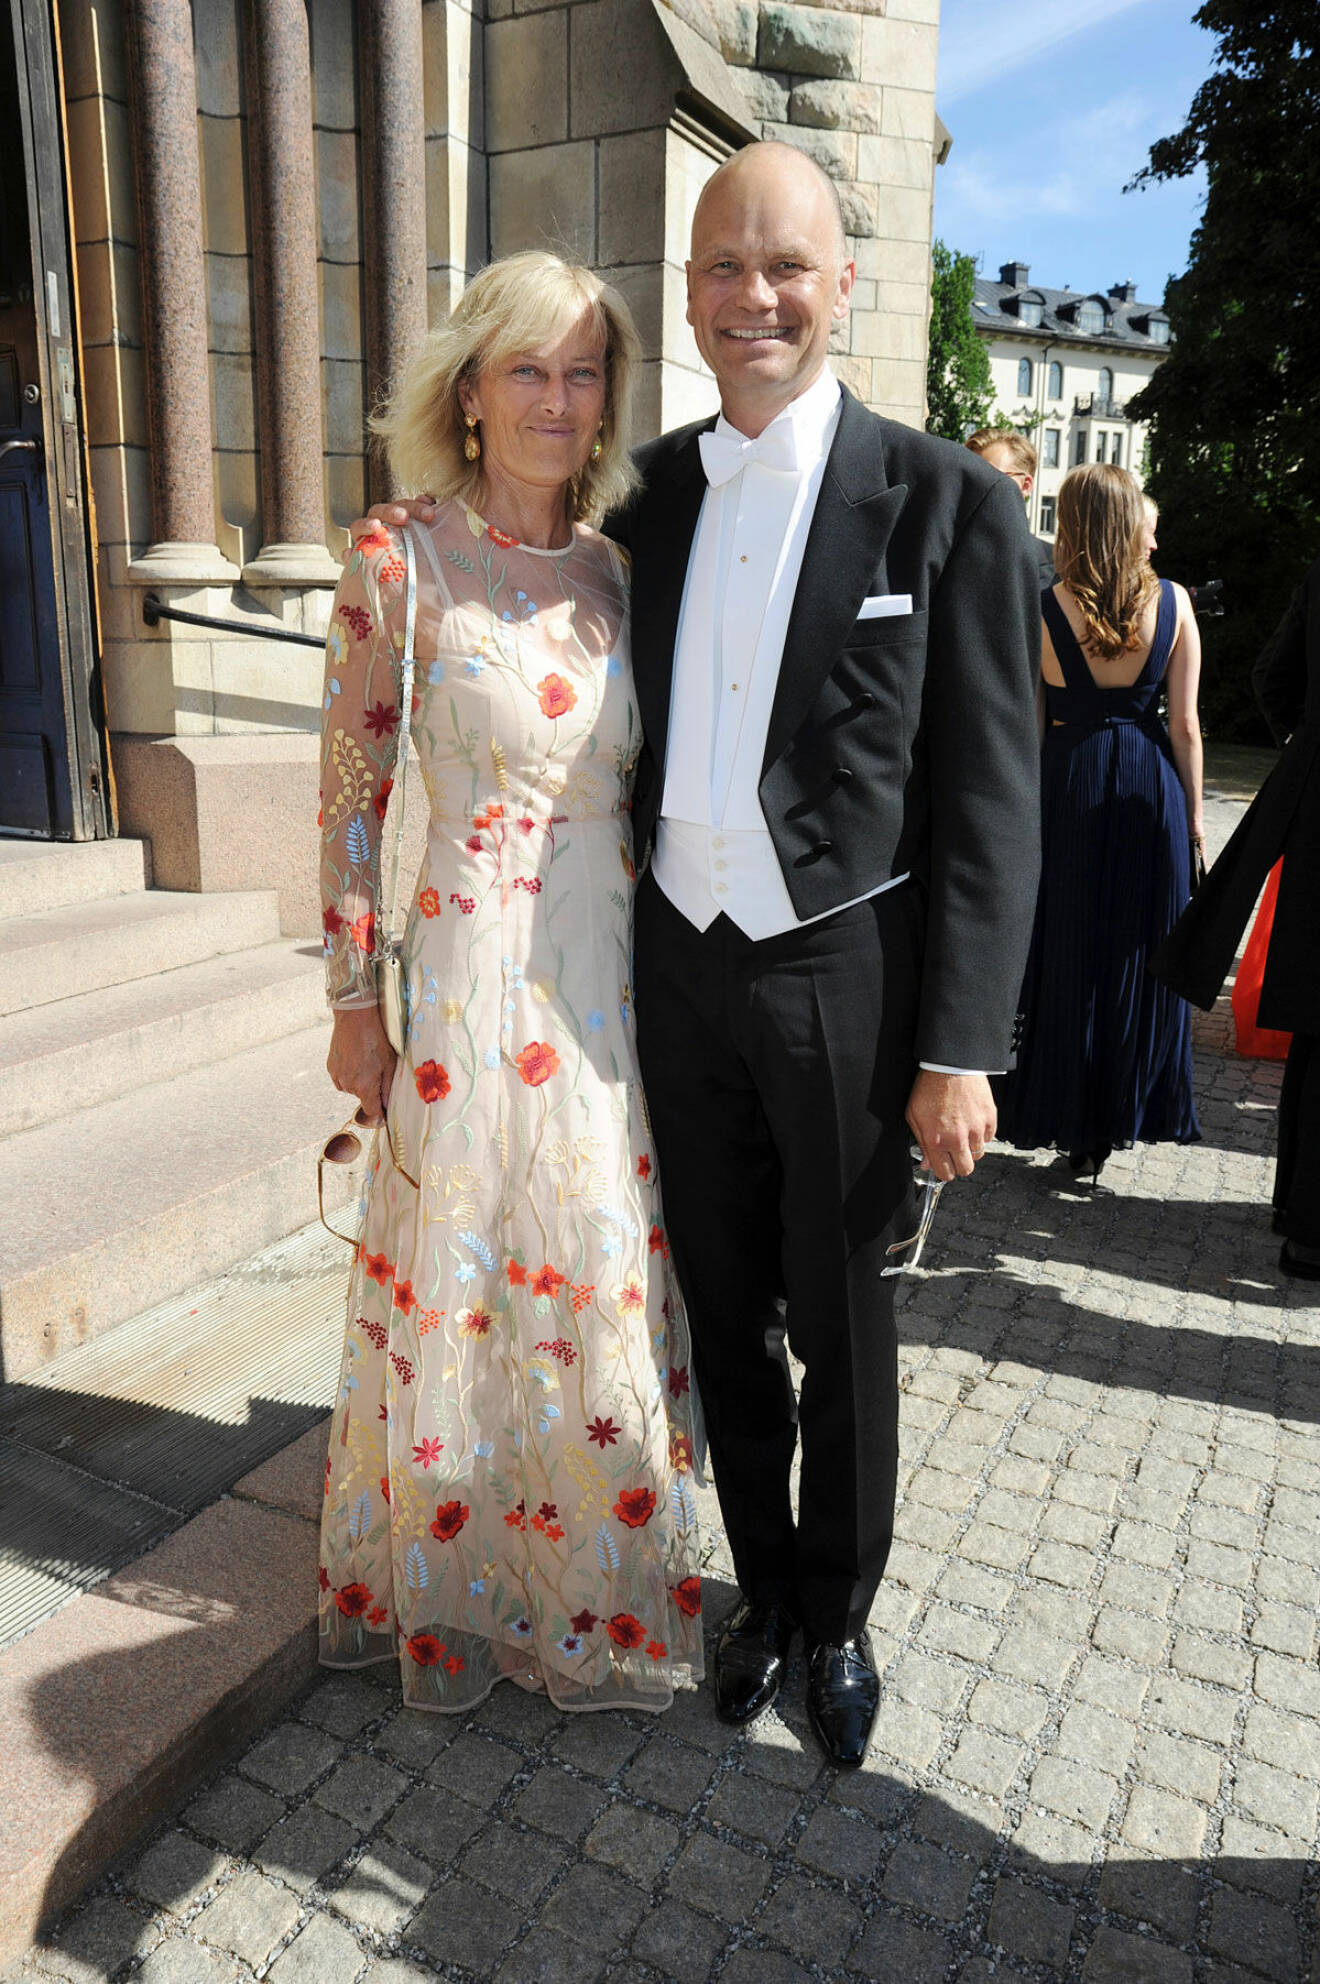 I somrig snygg klänning kom Pian Almqvist med maken Casten Almqvist.